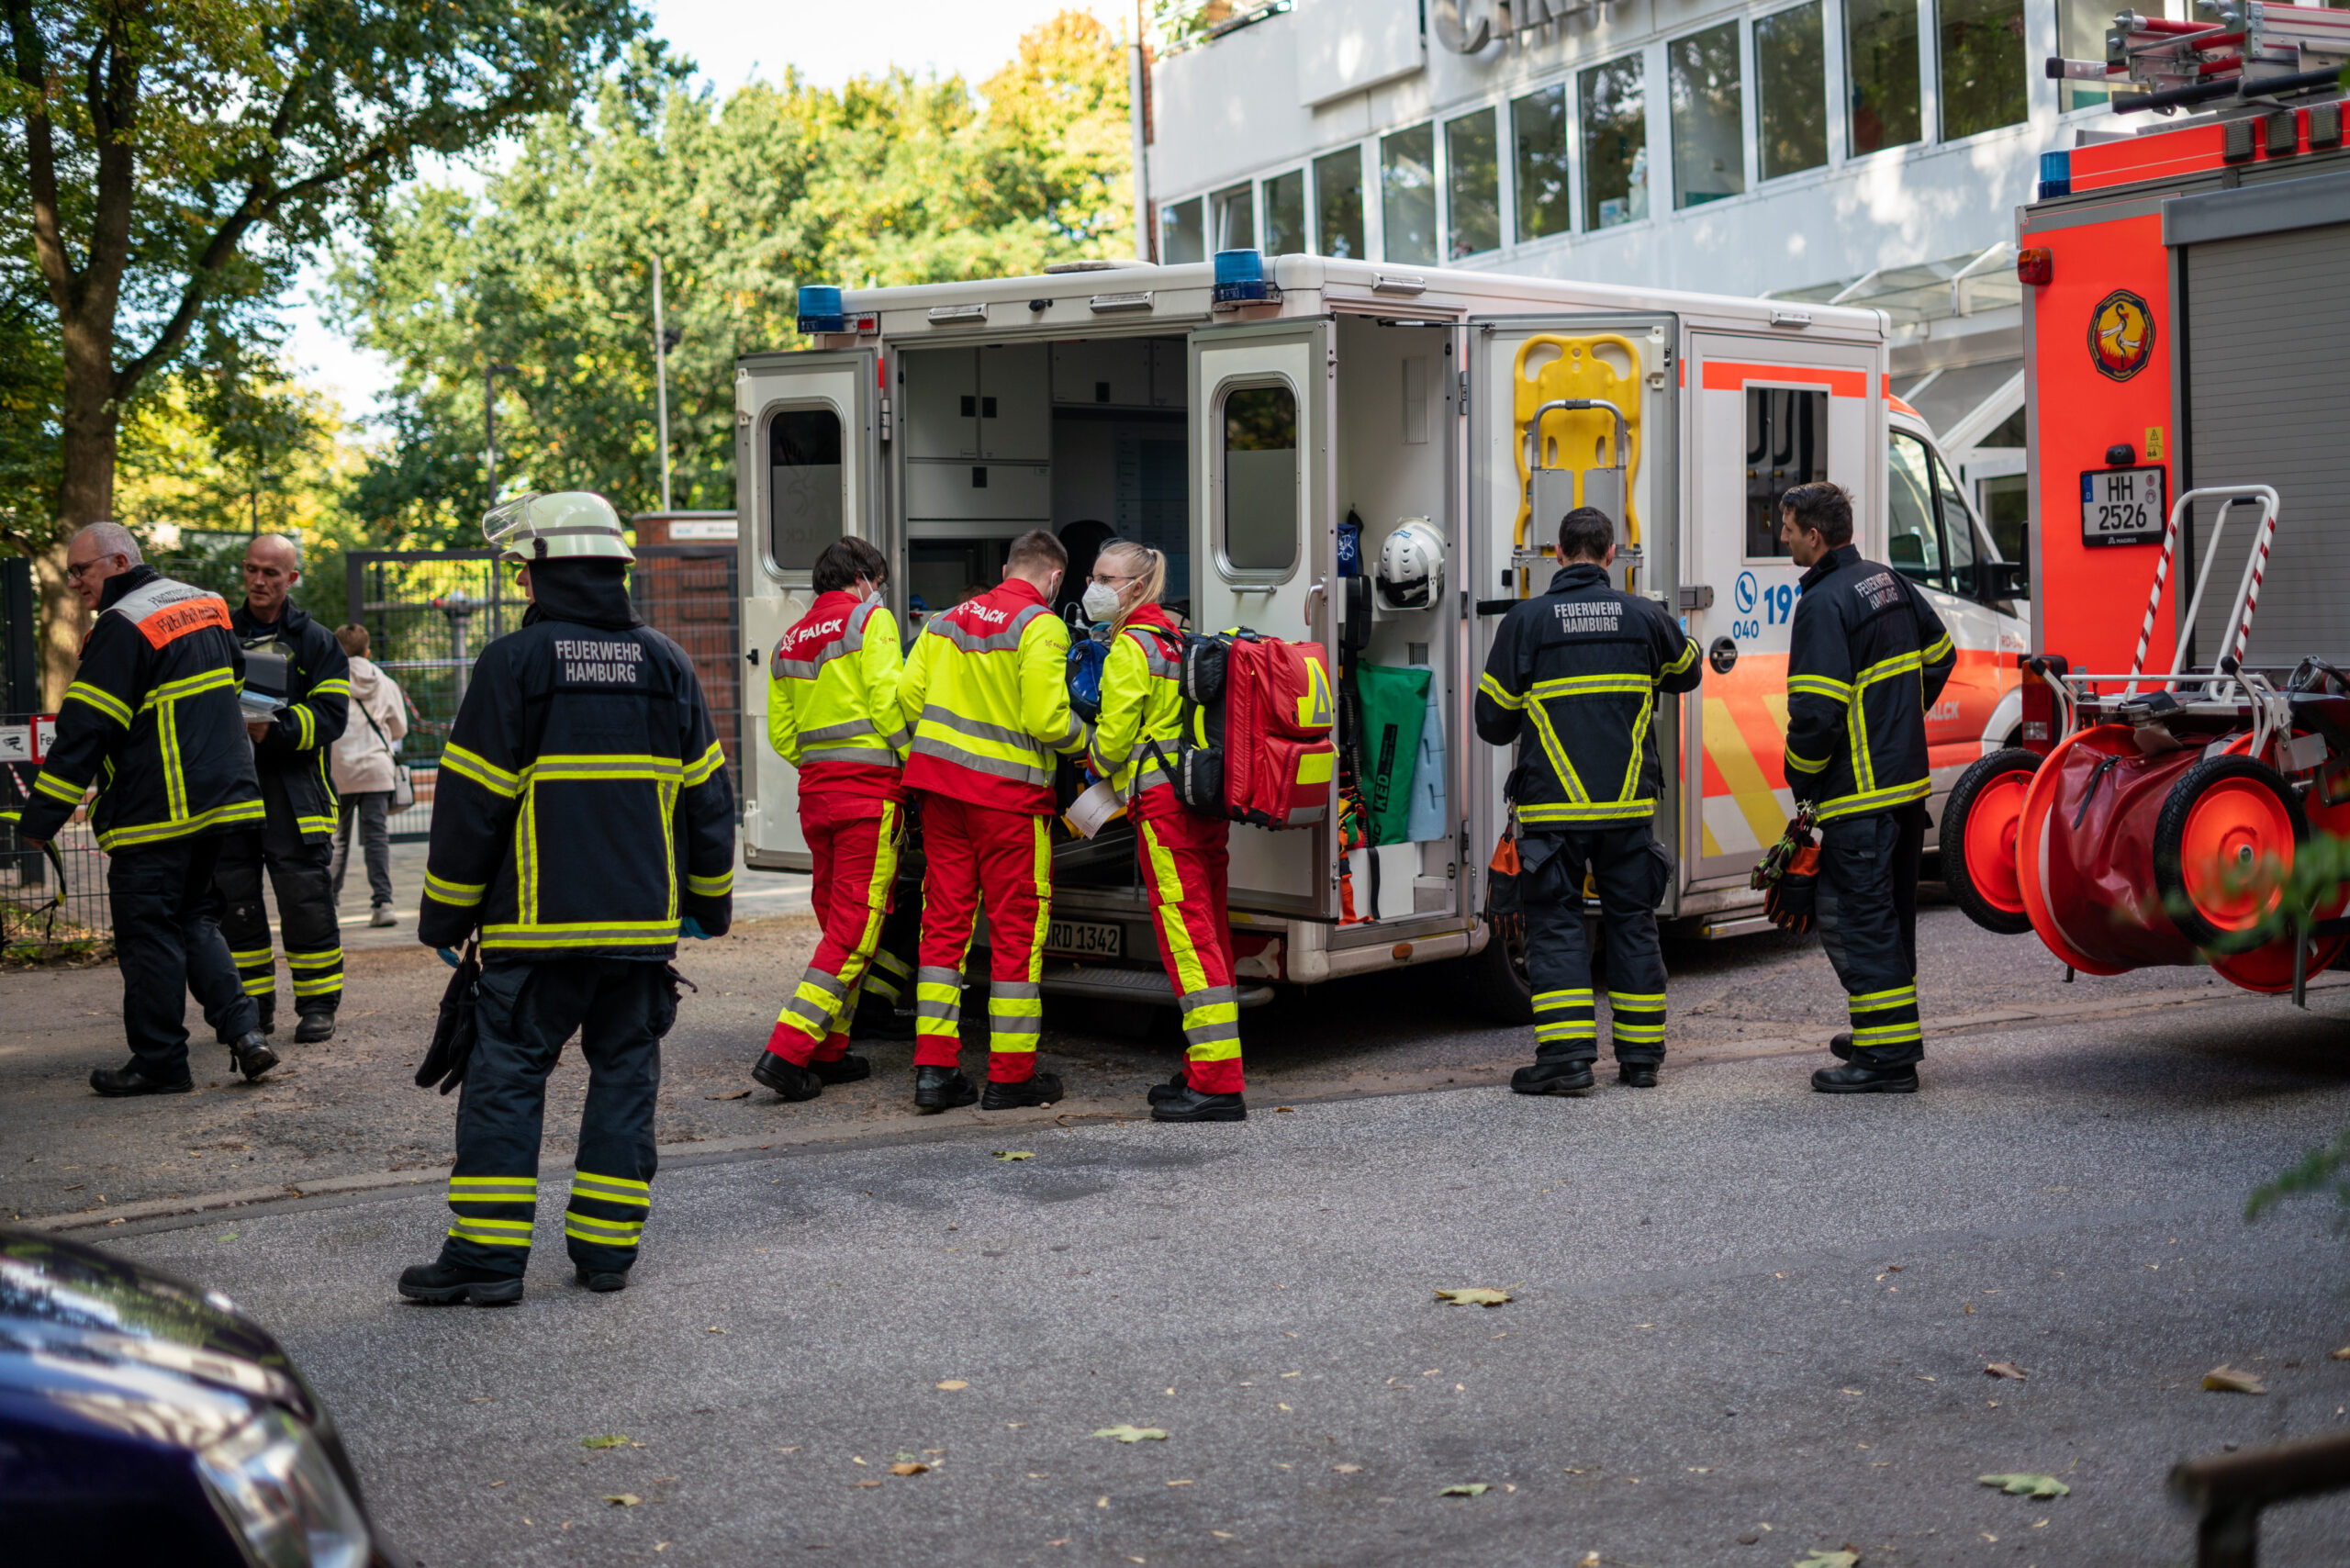 Neben Hamburger Meile – Kirchmitarbeiter bei Sturz von Dach schwer verletzt